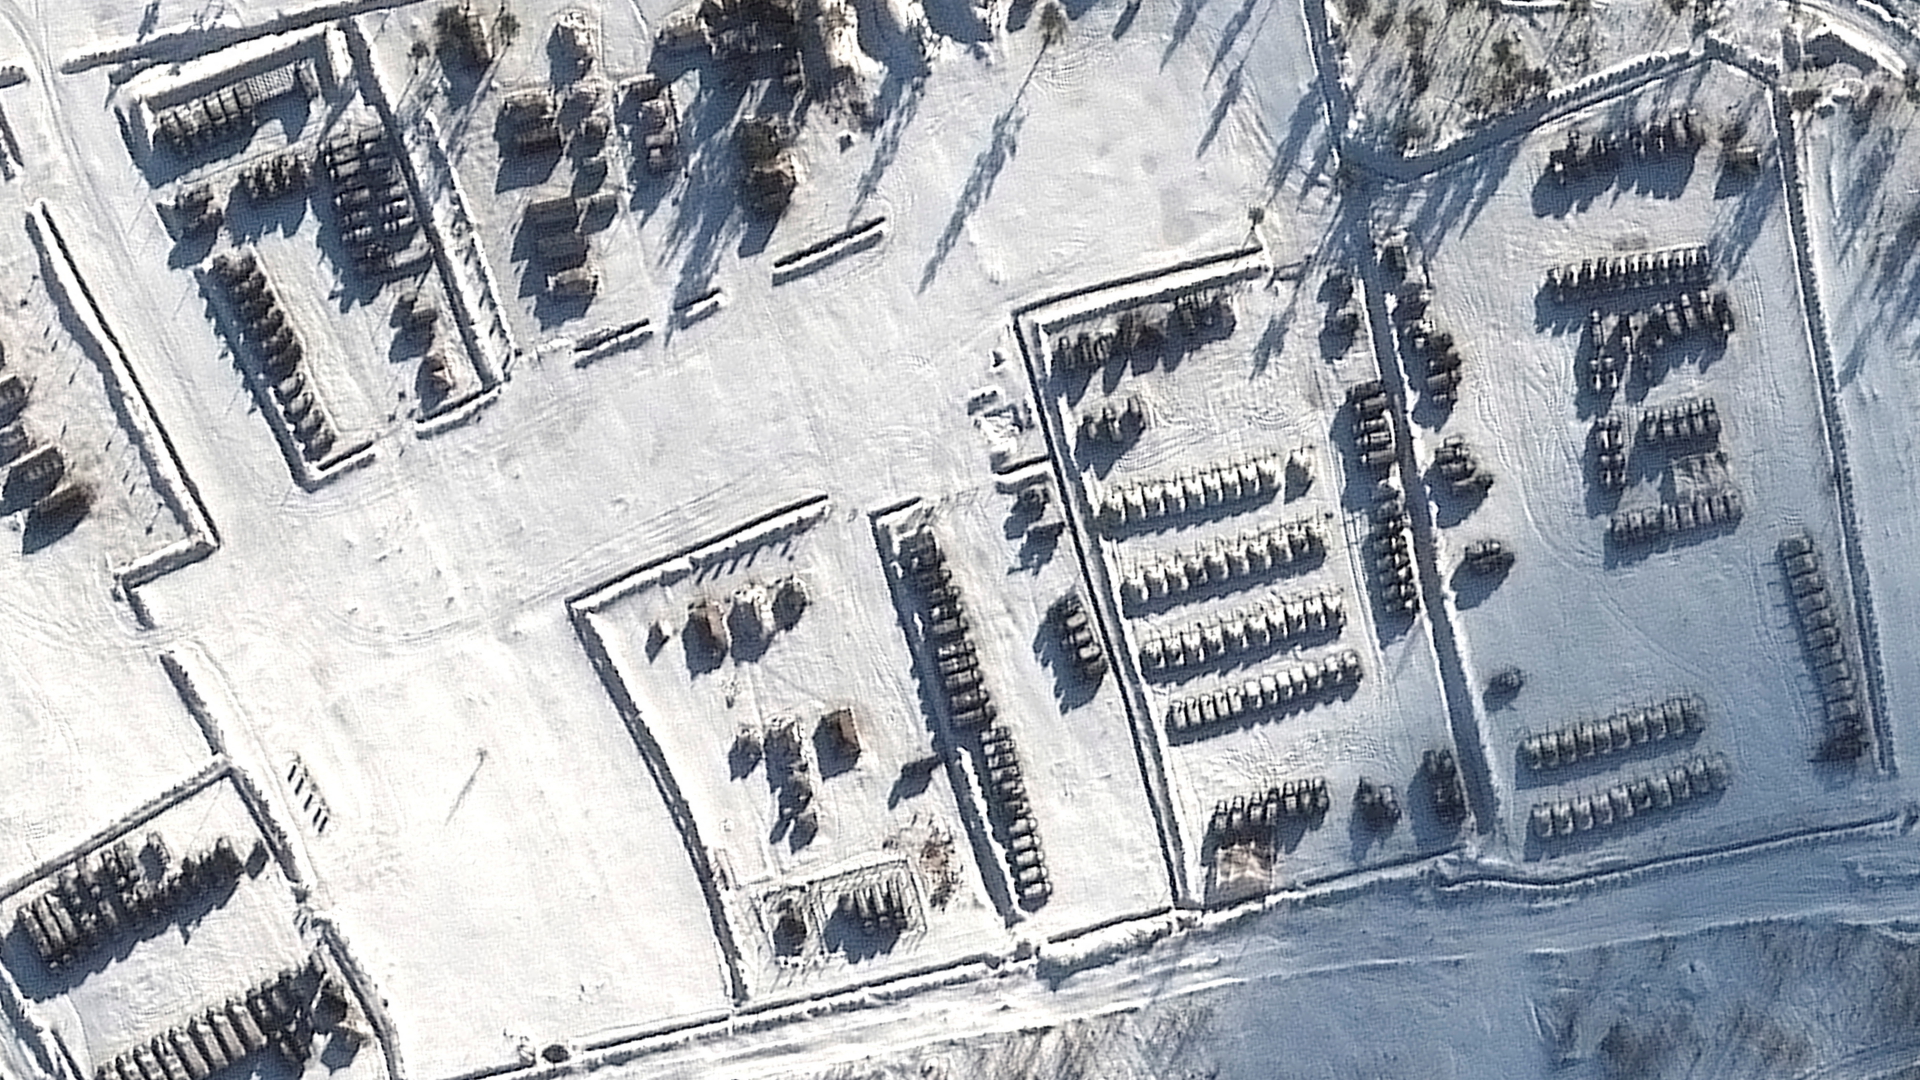 Satellitenaufnahme eines russischen Militärstützpunkts mit Panzern und Artillerie in der Nähe der Stadt Woronesch. | via REUTERS